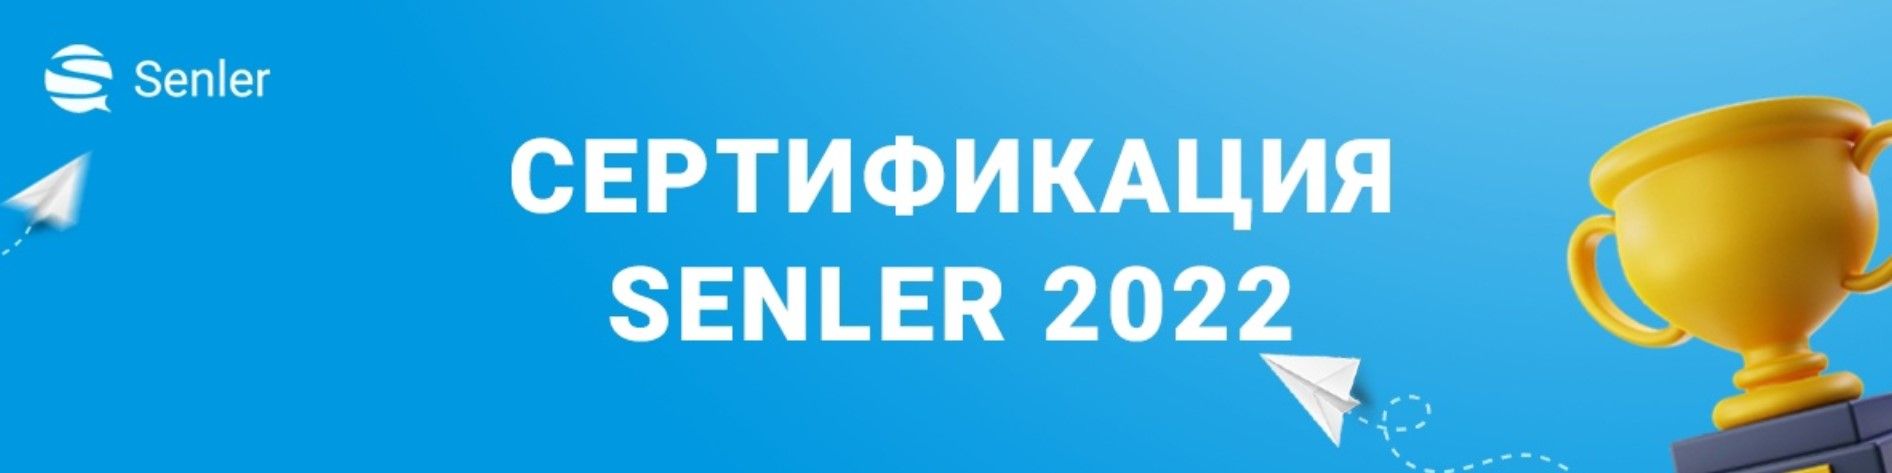 Скачать - Senler. Сертификация Senler (2022).jpg